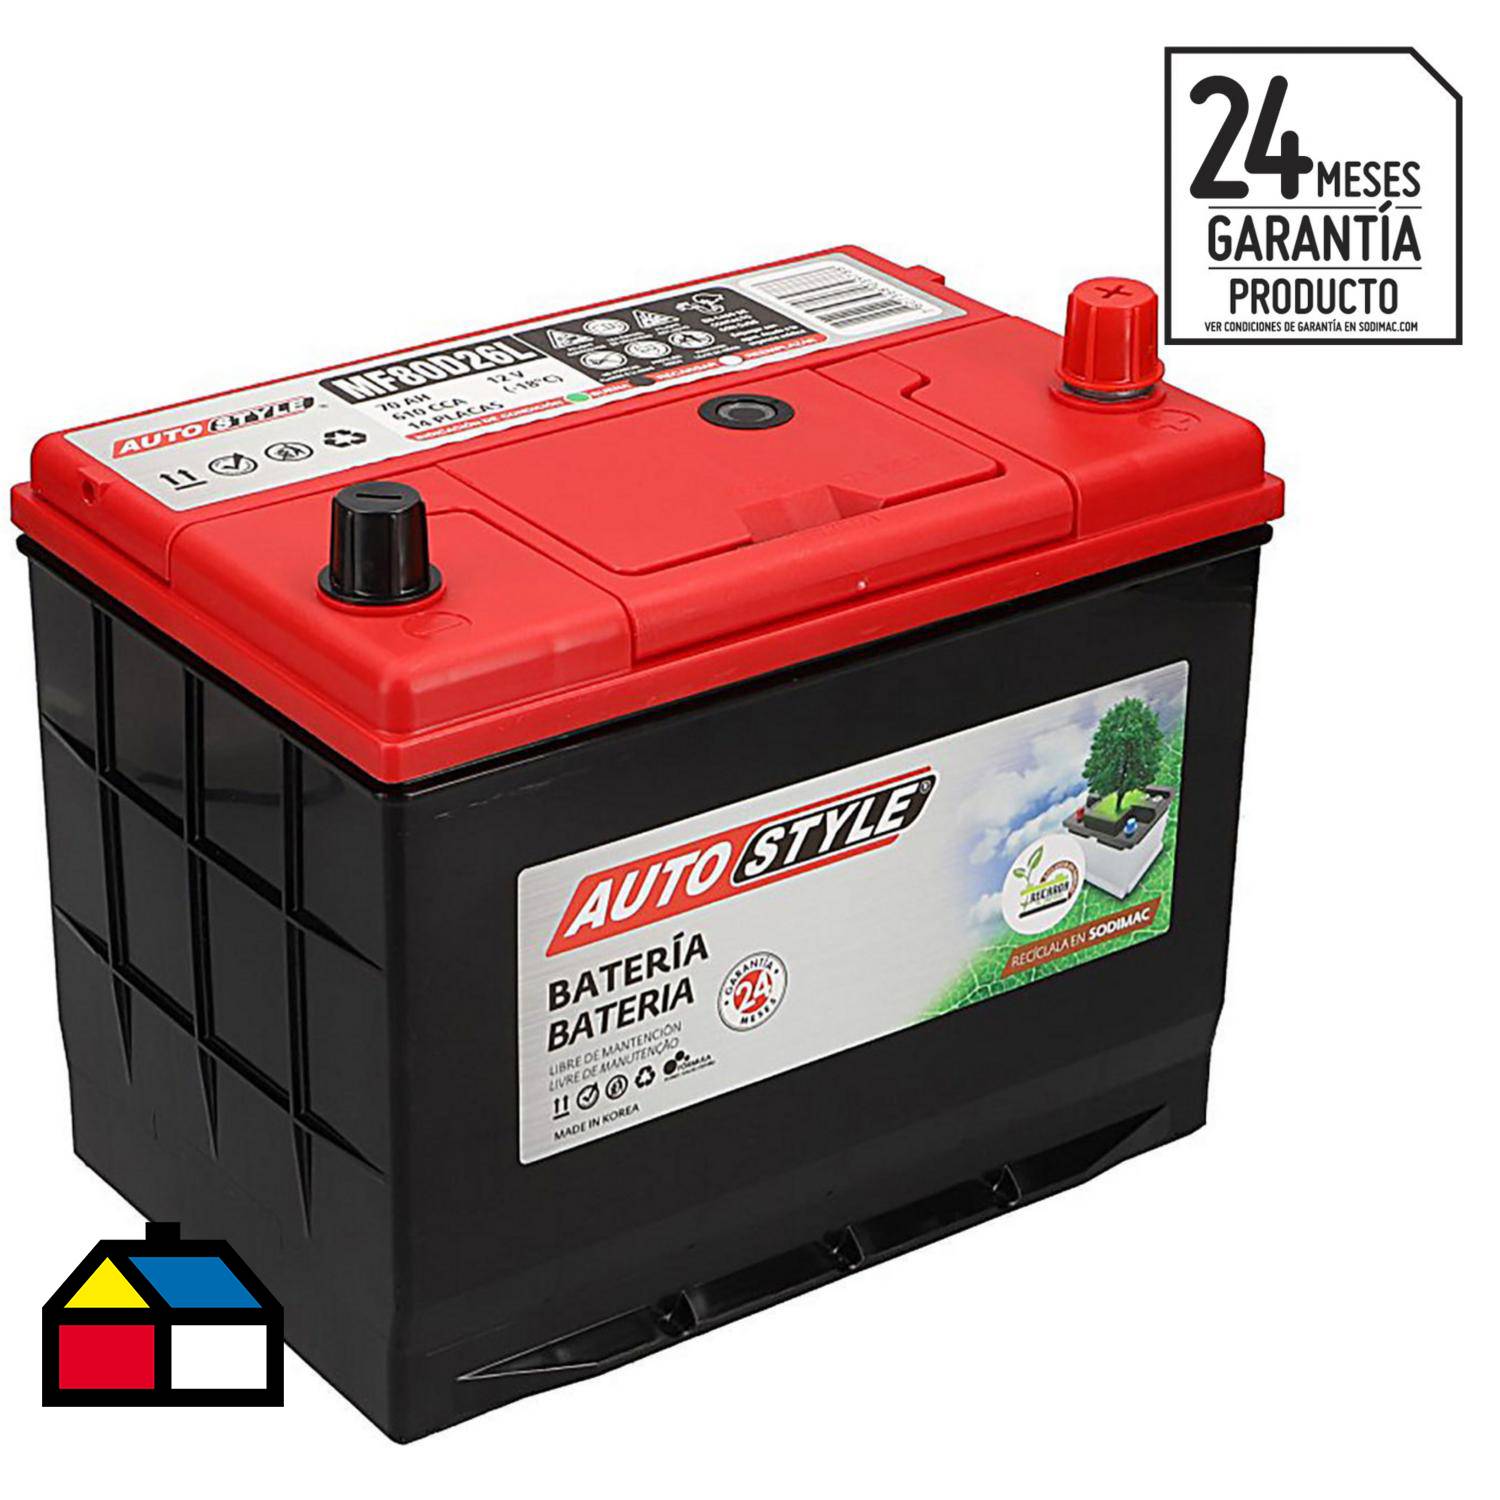 Batería Premium mod. 57220 de 70 ah borne positivo derecho - Chile Baterías